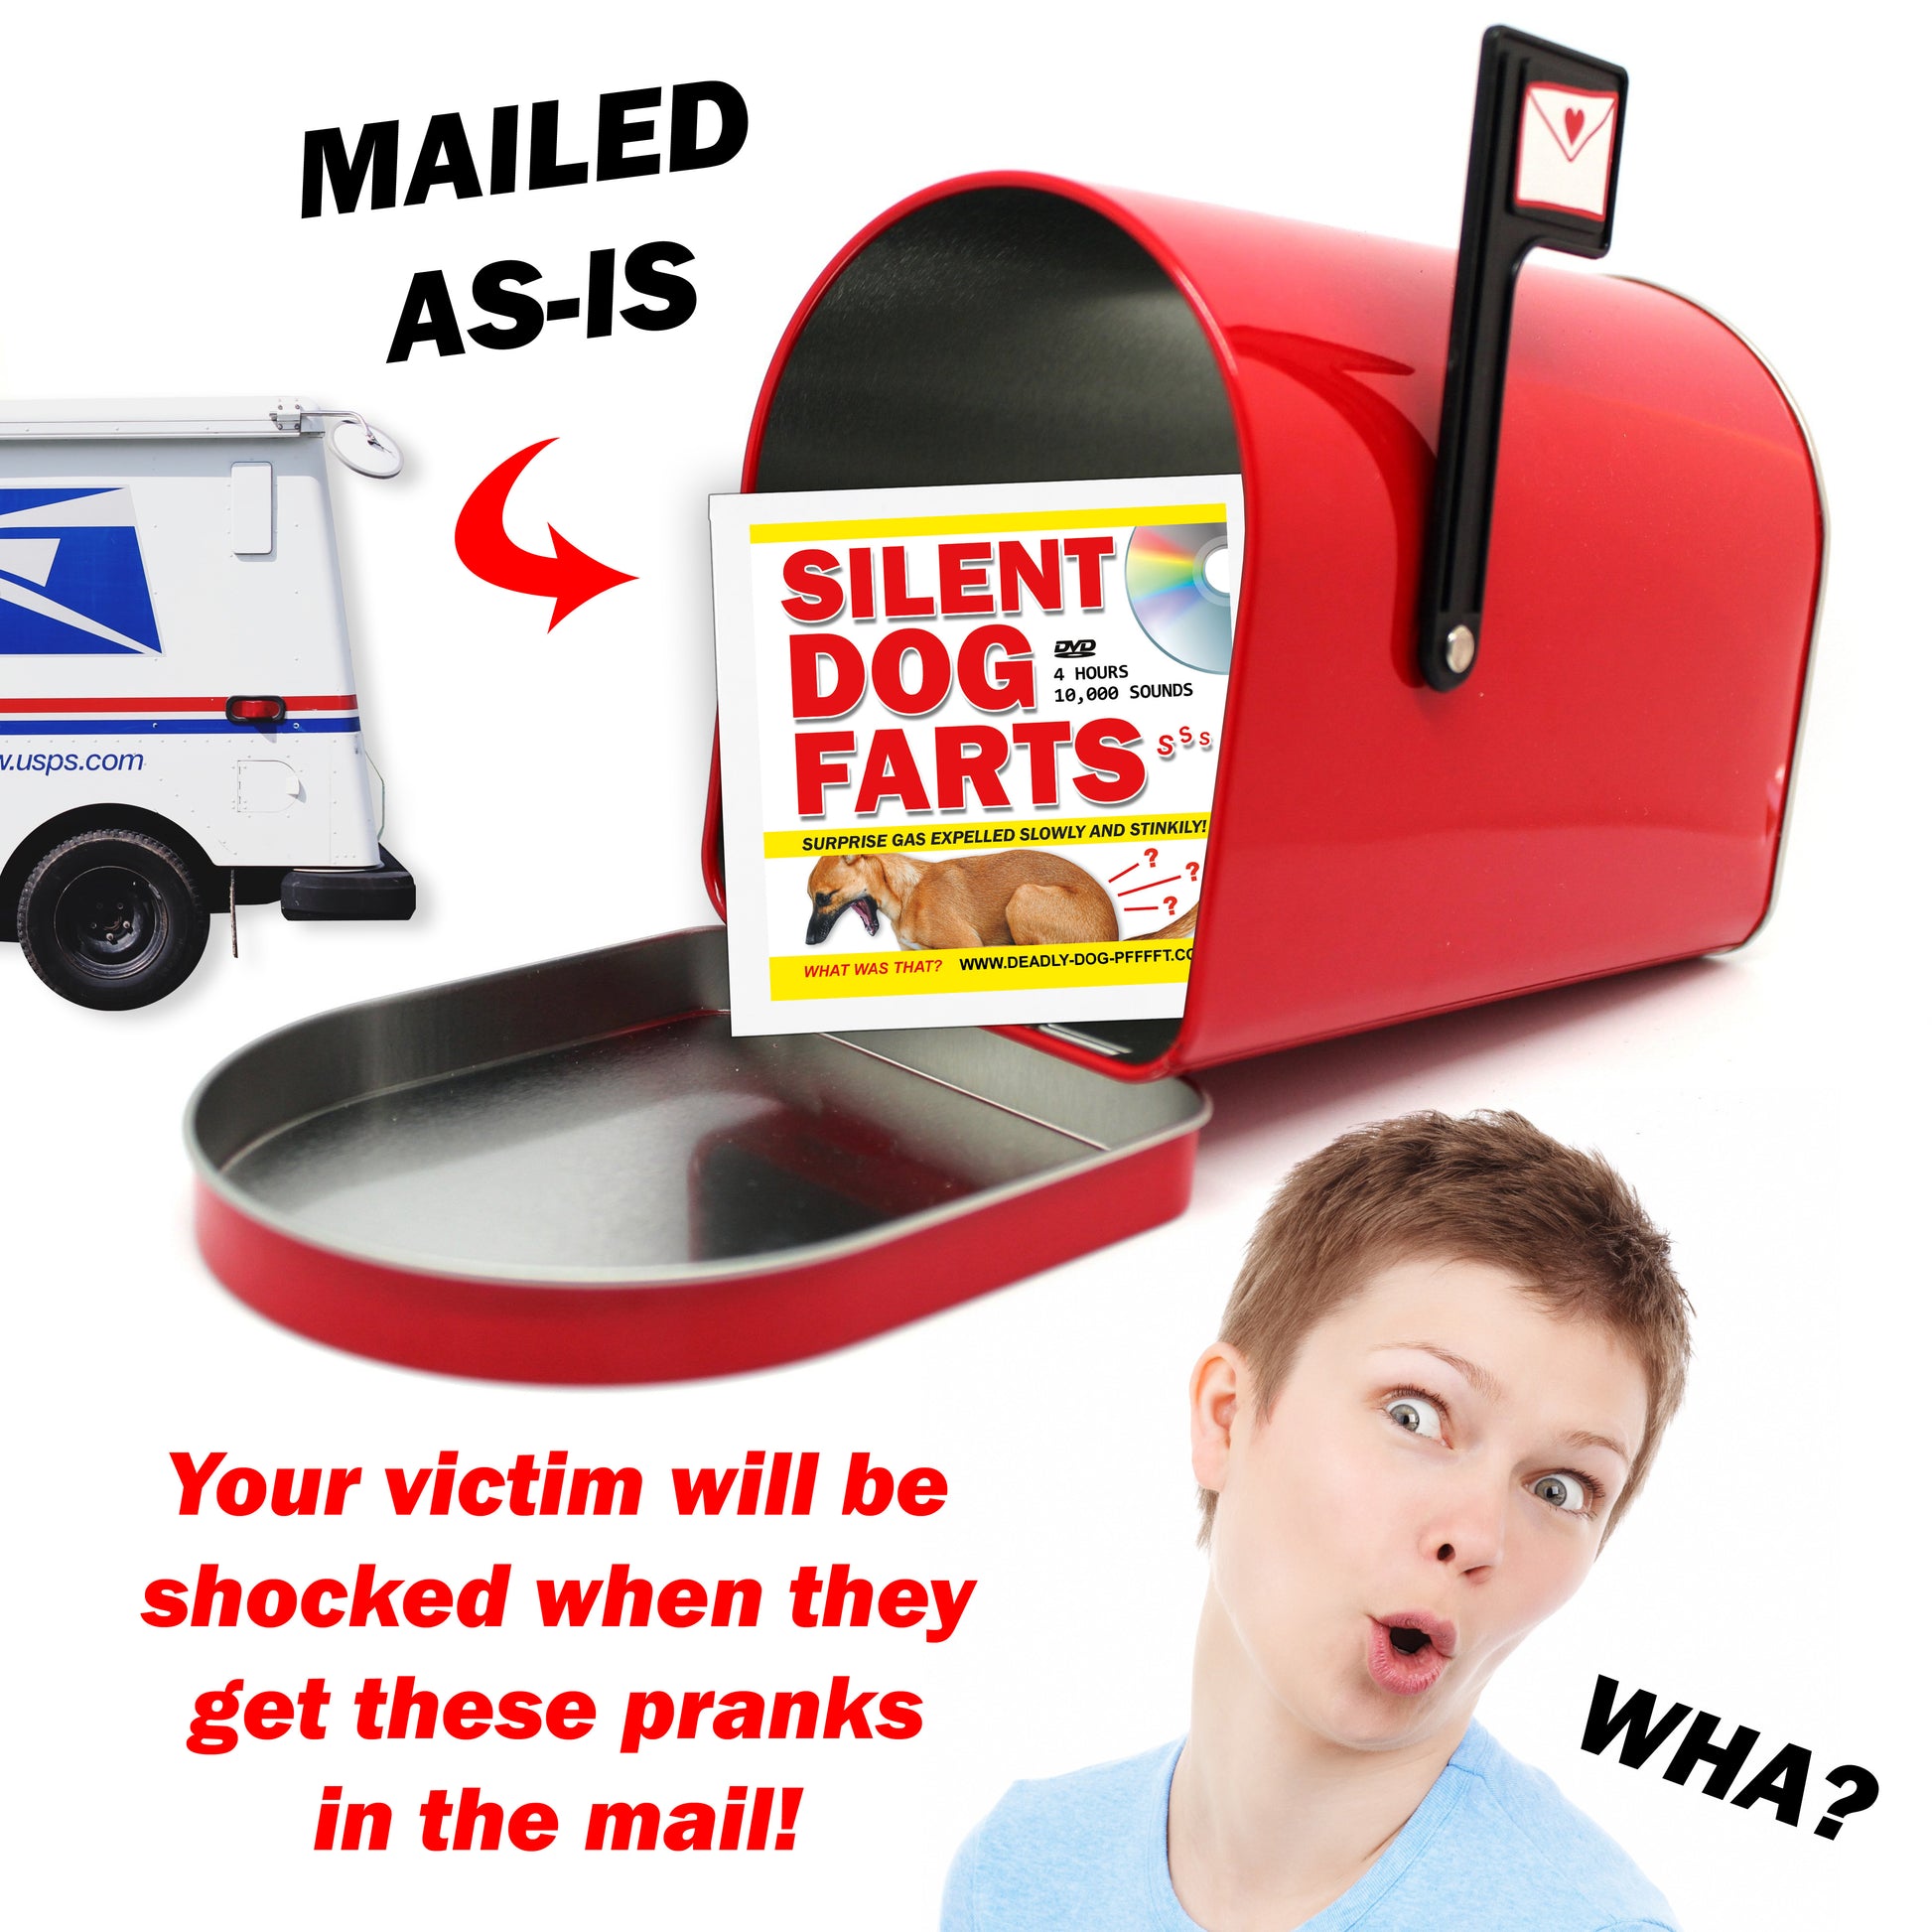 Silent Dog Farts Gag Gift Mailer